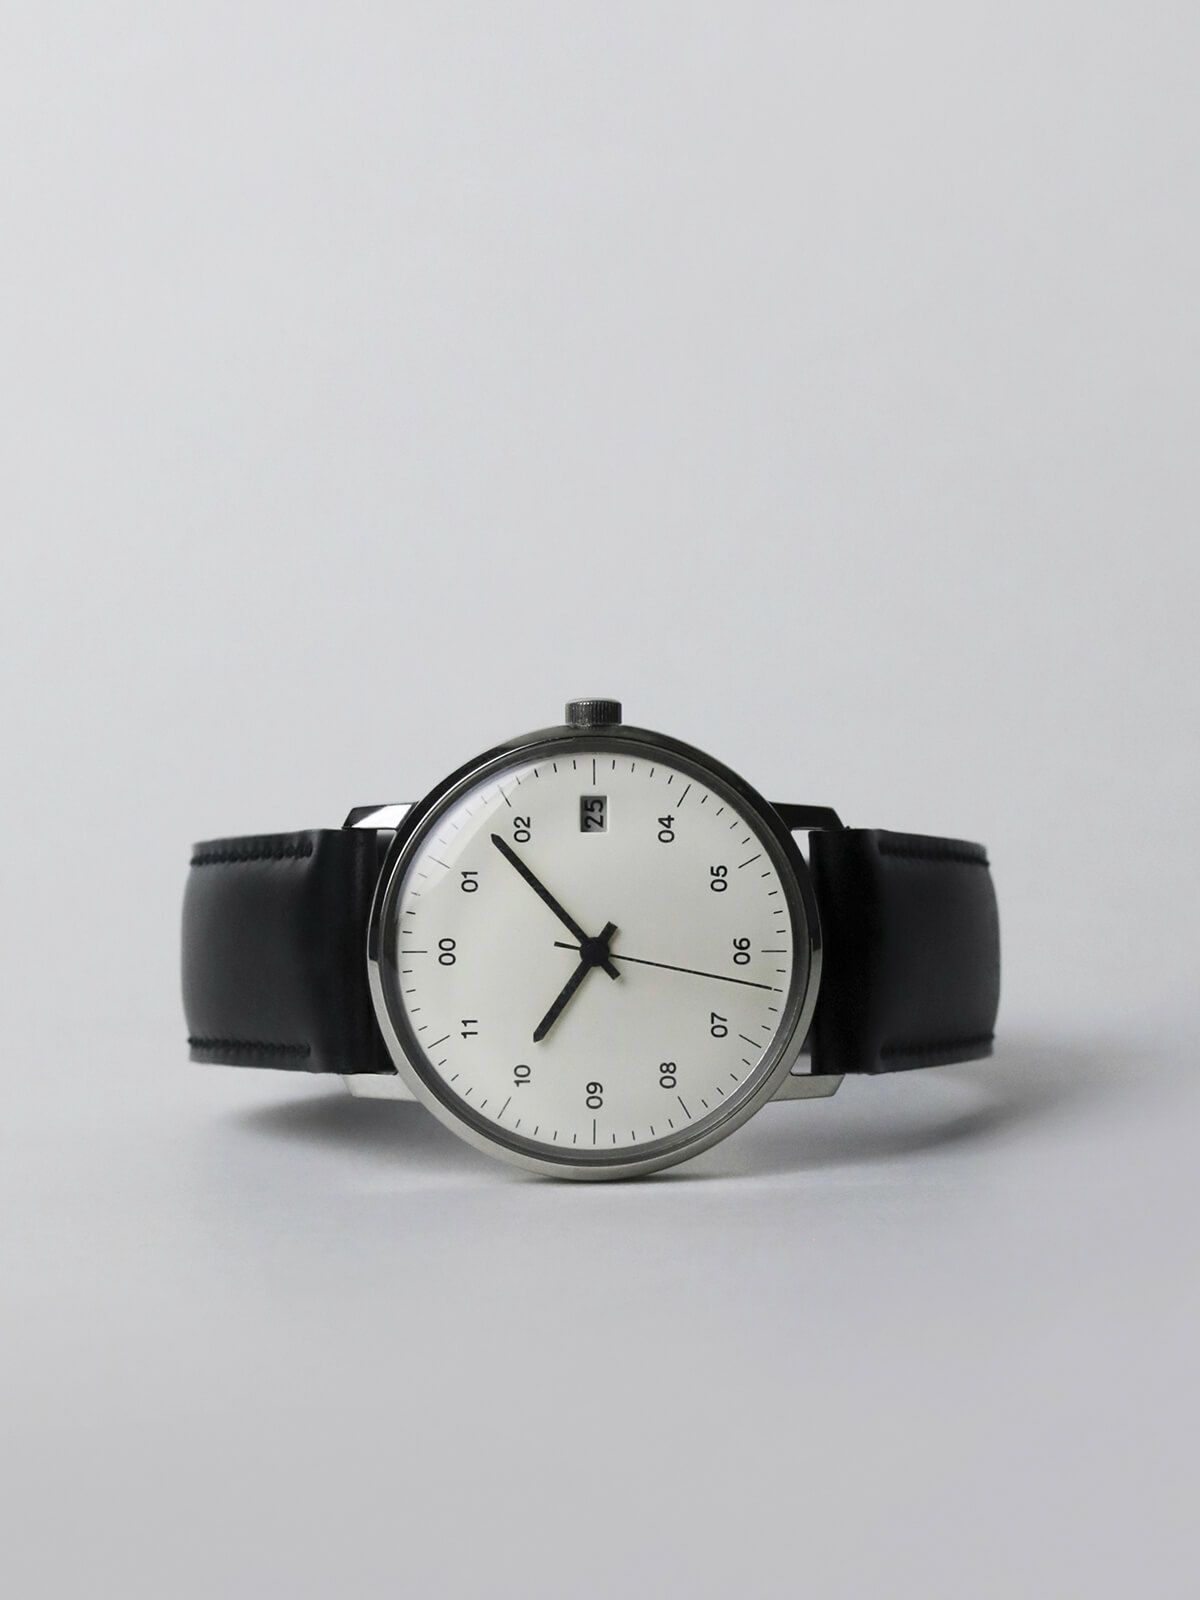 SK02ホワイト ブラックコードバンレザー シルバー鏡面 腕時計 メンズ